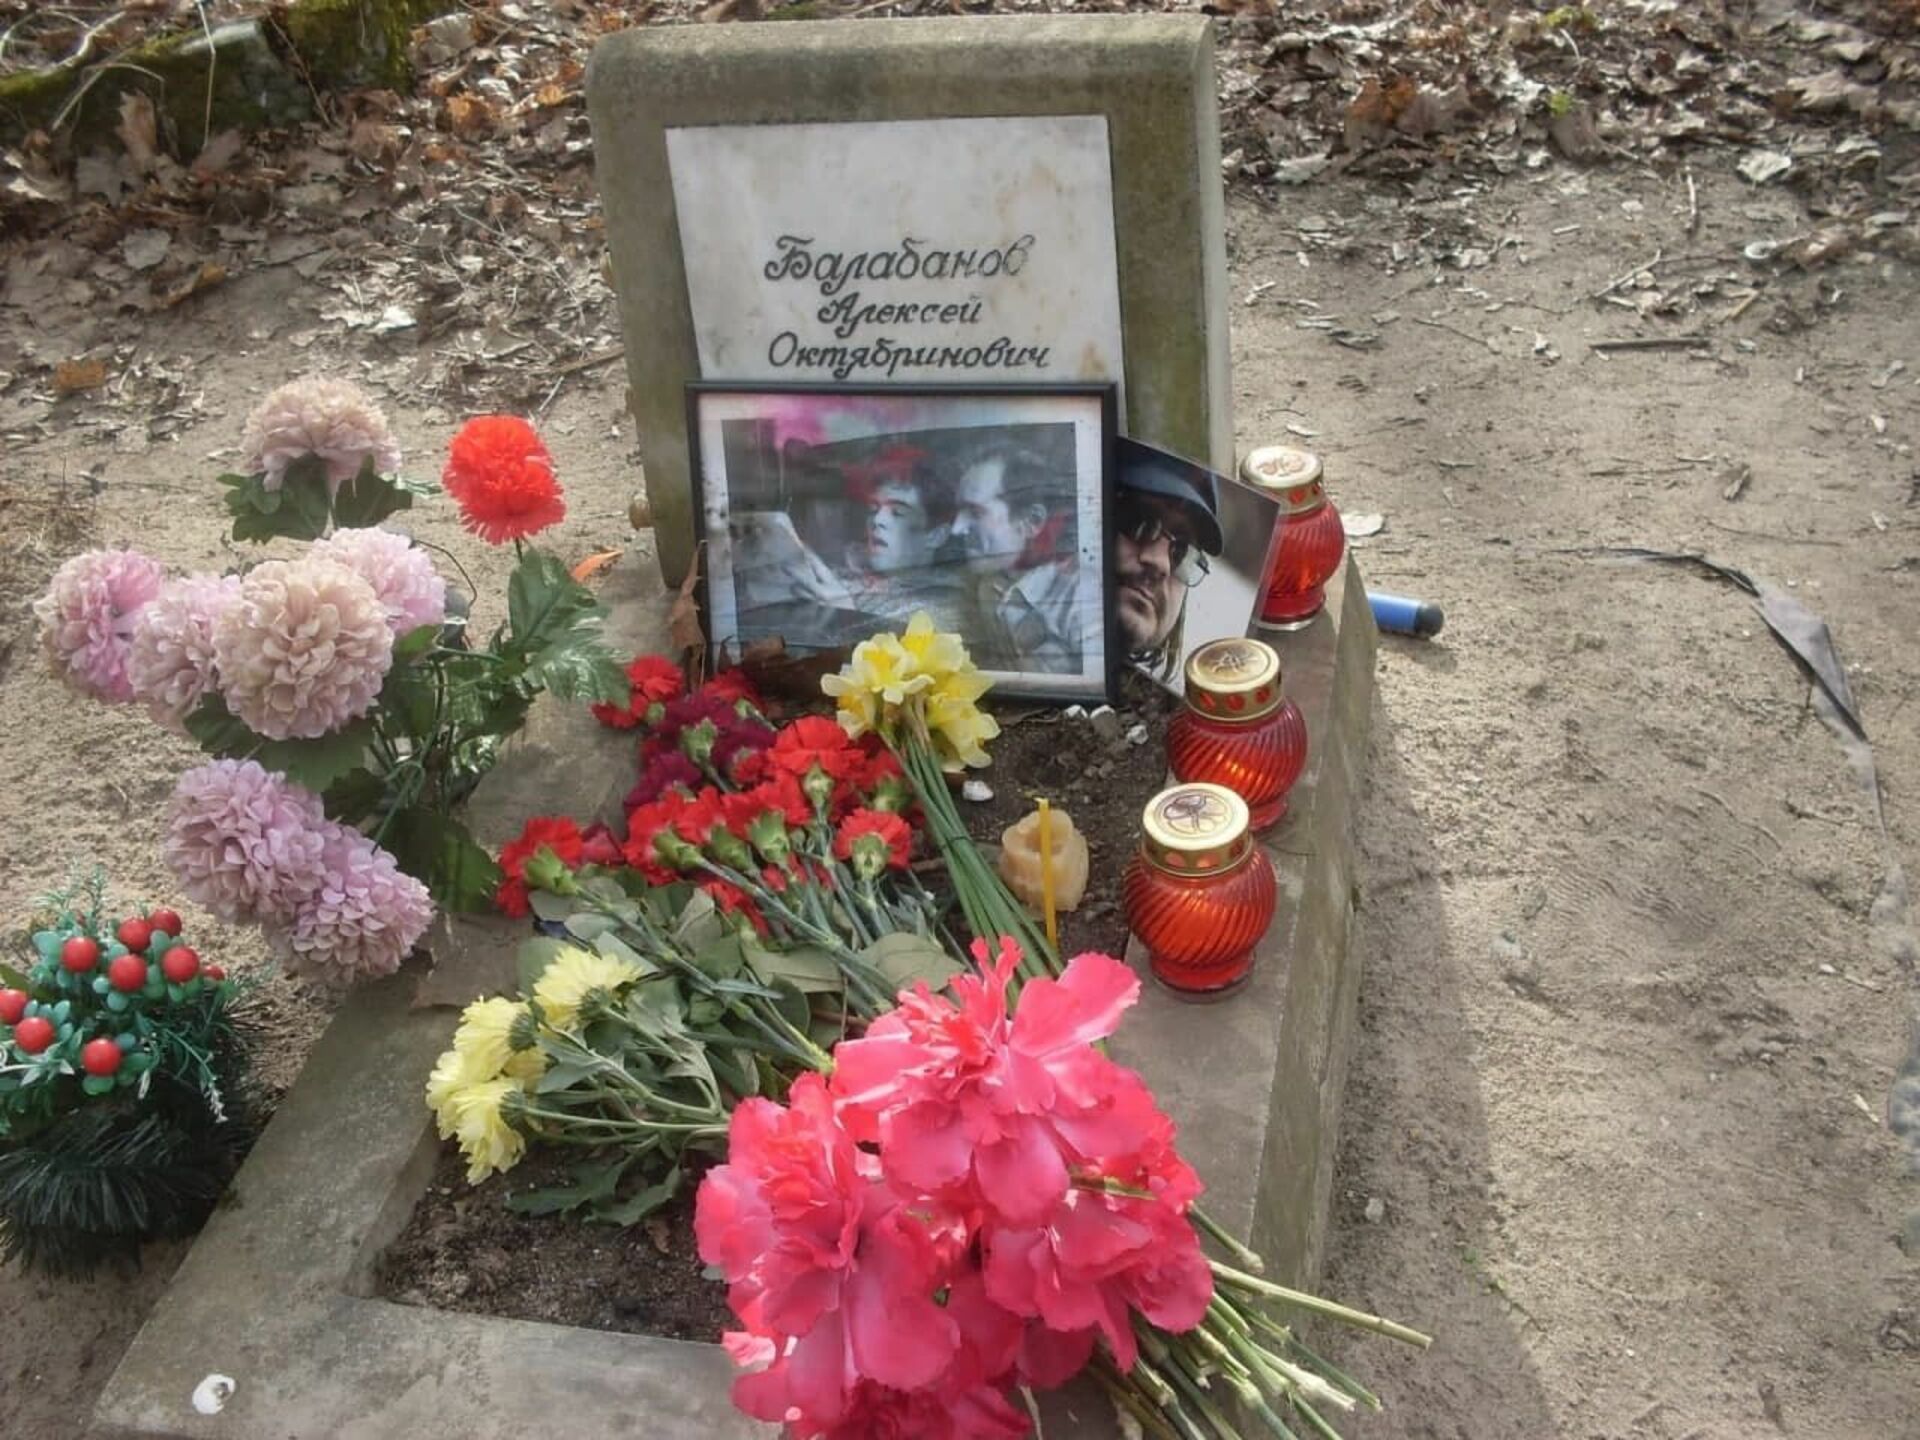 Похоронили режиссера. Могила Алексея Балабанова на Смоленском. Могила Алексея Балабанова на Смоленском кладбище. Могила Алексея Балабанова.